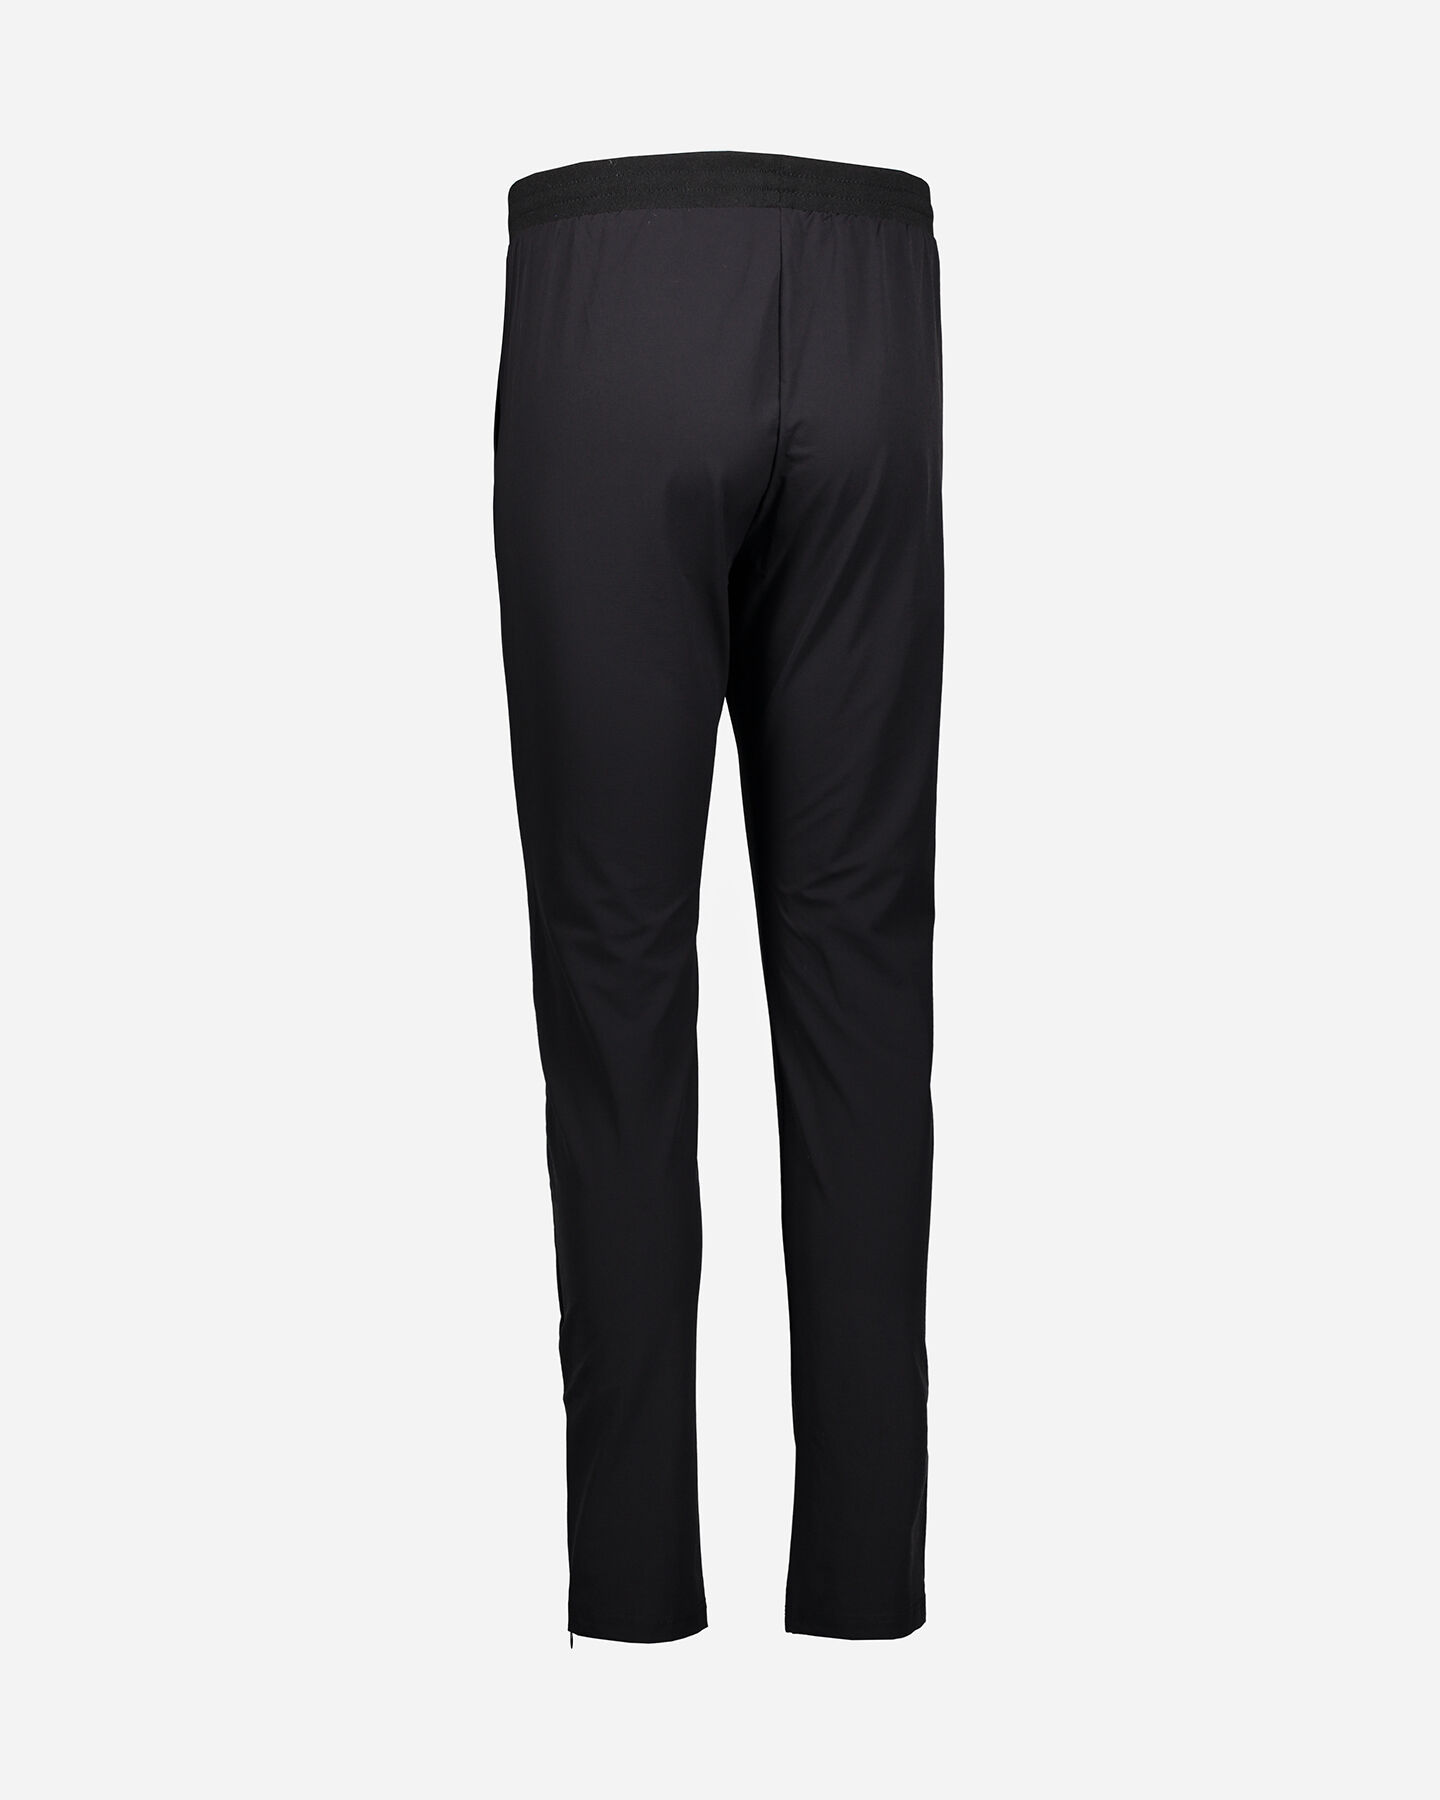  Pantalone FILA CLASSIC LOGO W S4071264|050|XS scatto 2